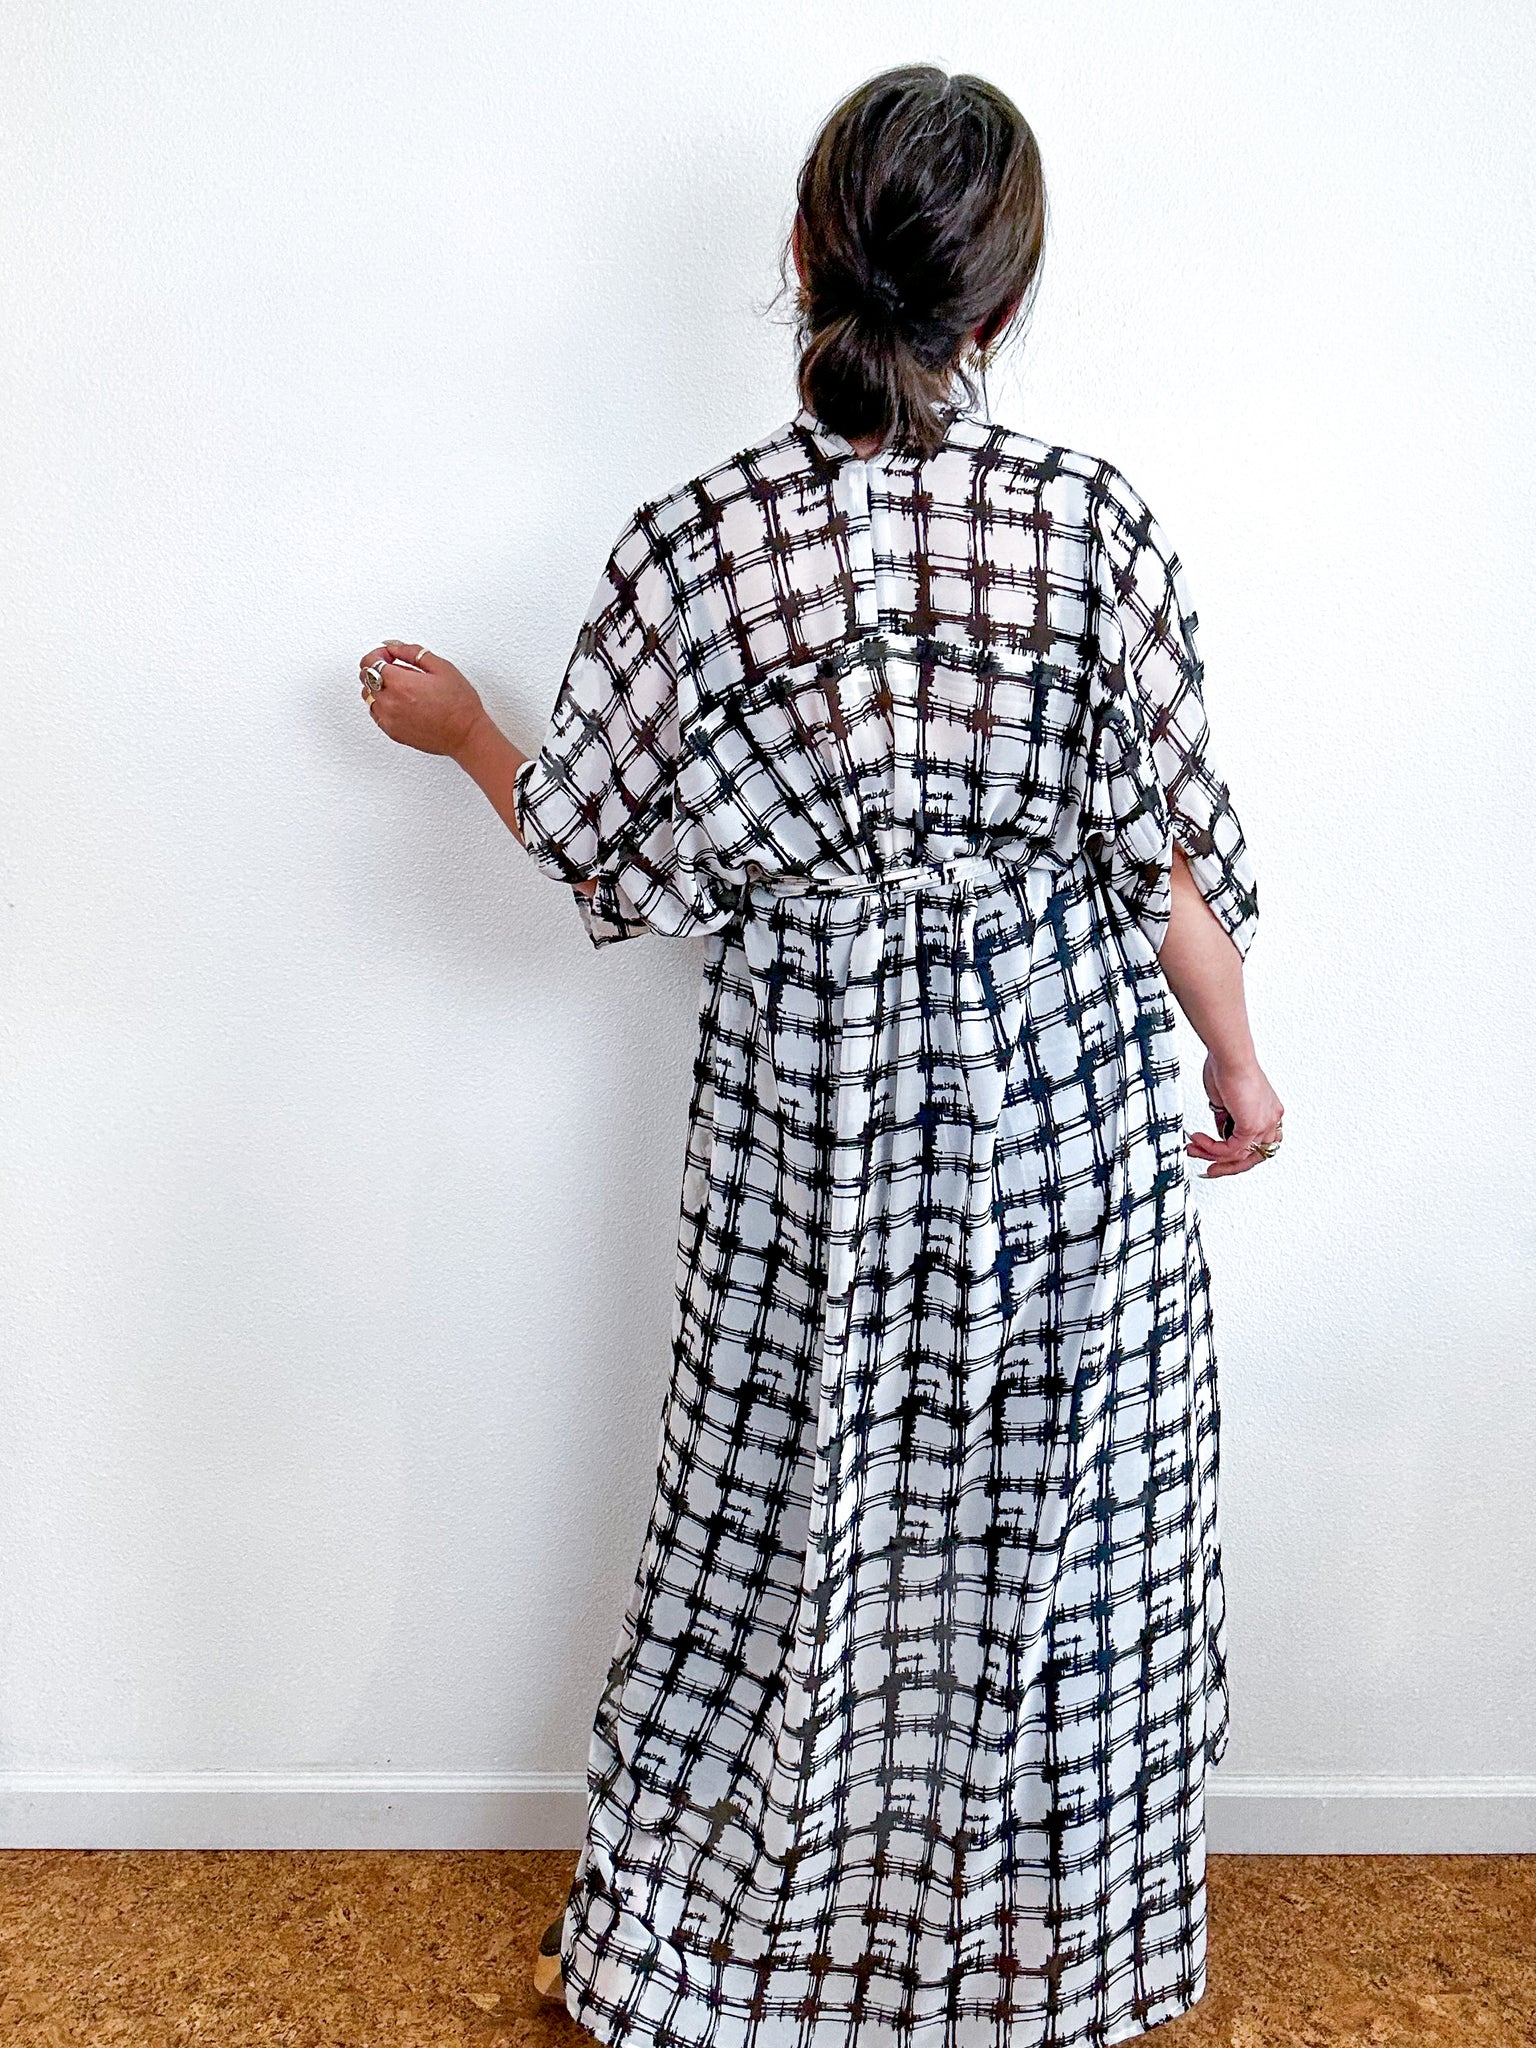 Print High Low Kimono White Black Grid Sketch Chiffon